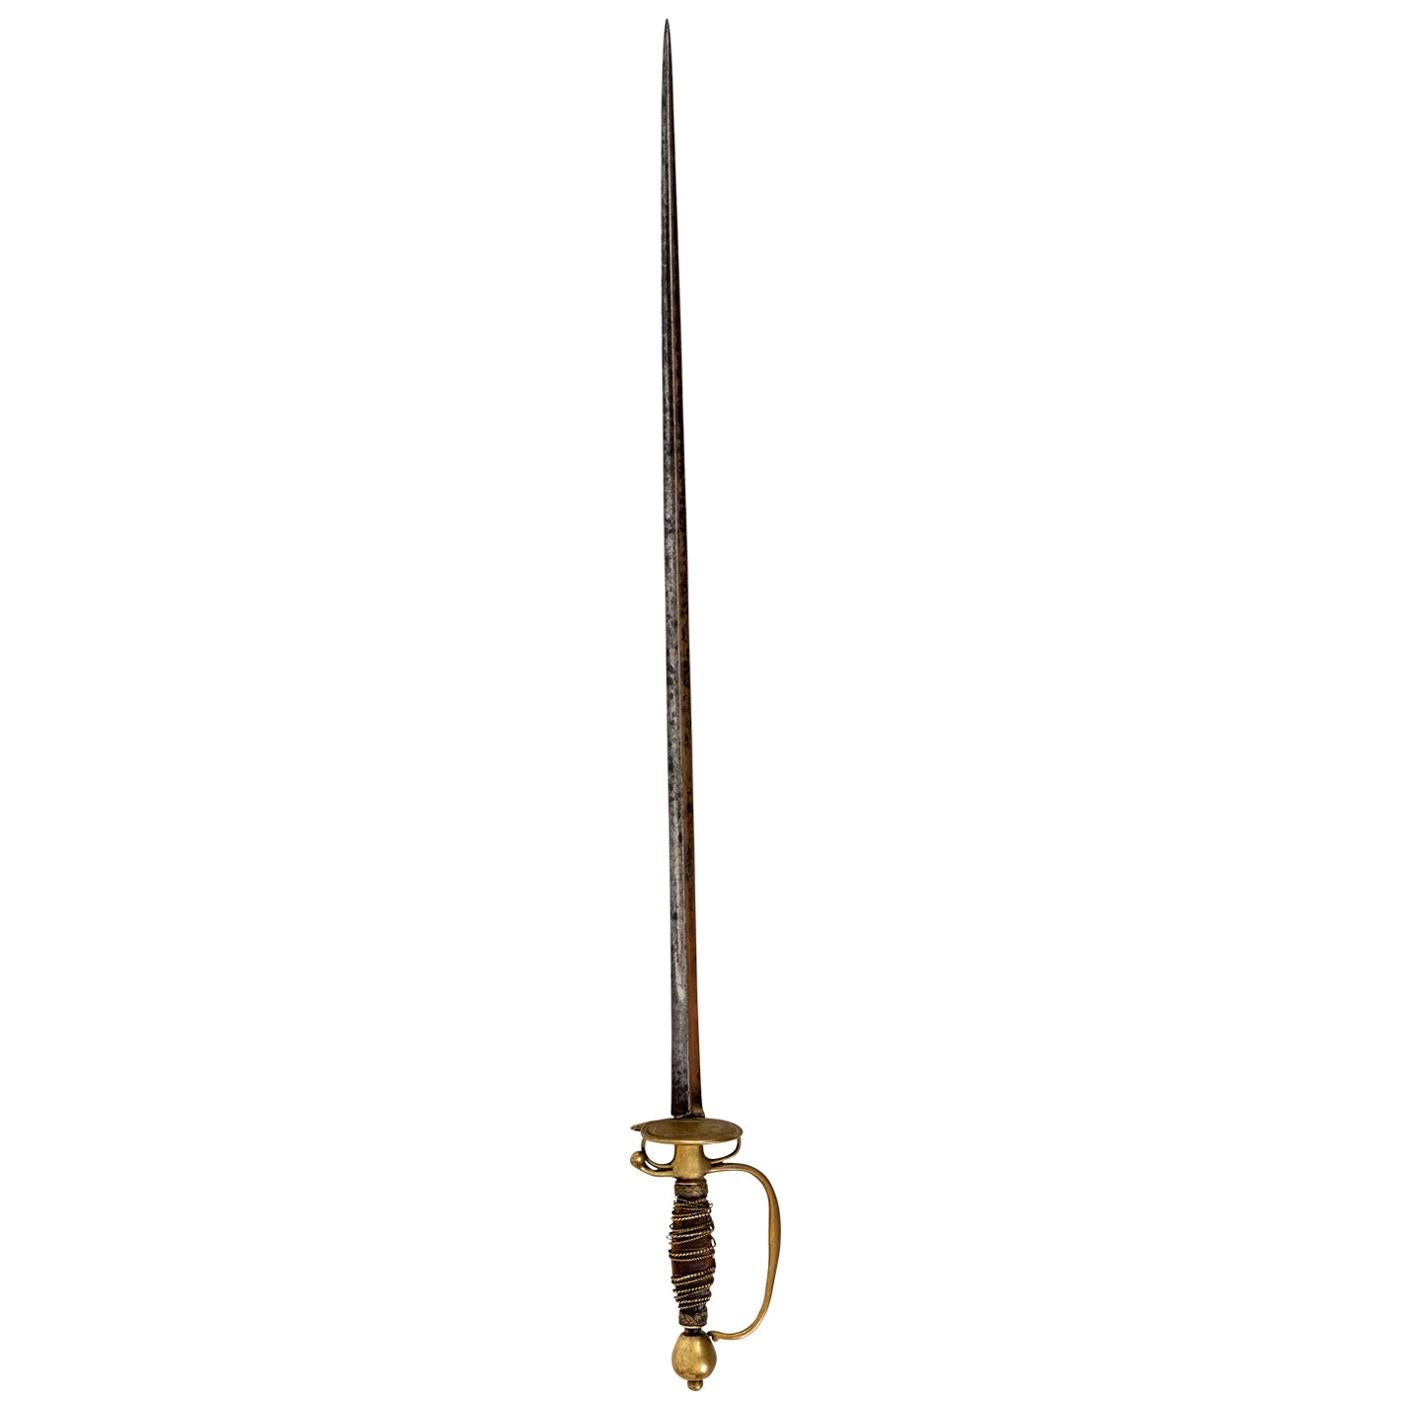 Gentleman's Sword, circa 1700s